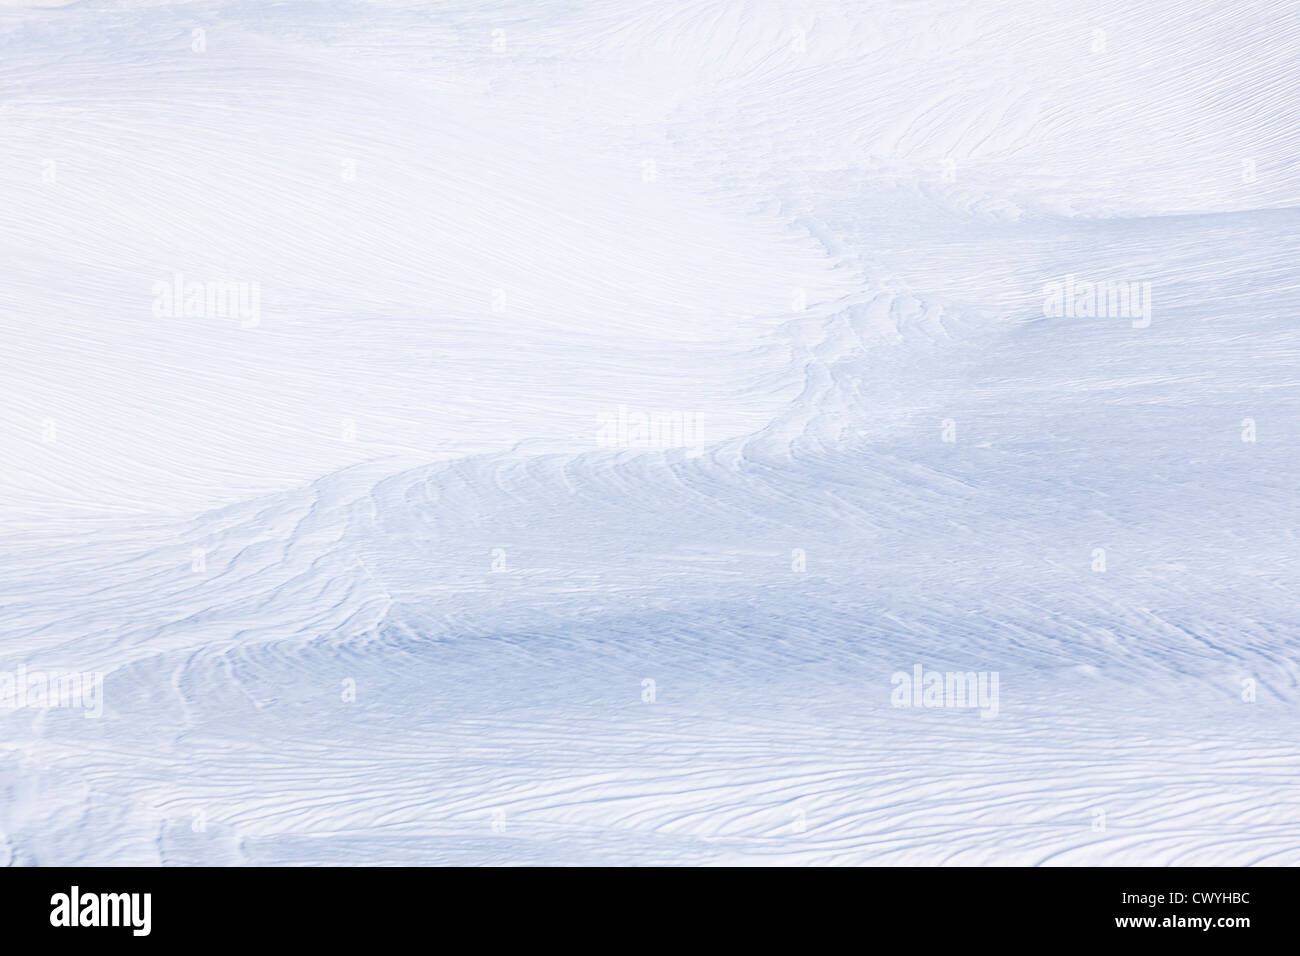 Sterrato coperta di neve dopo il warm snap, Annaberg, Austria Foto Stock